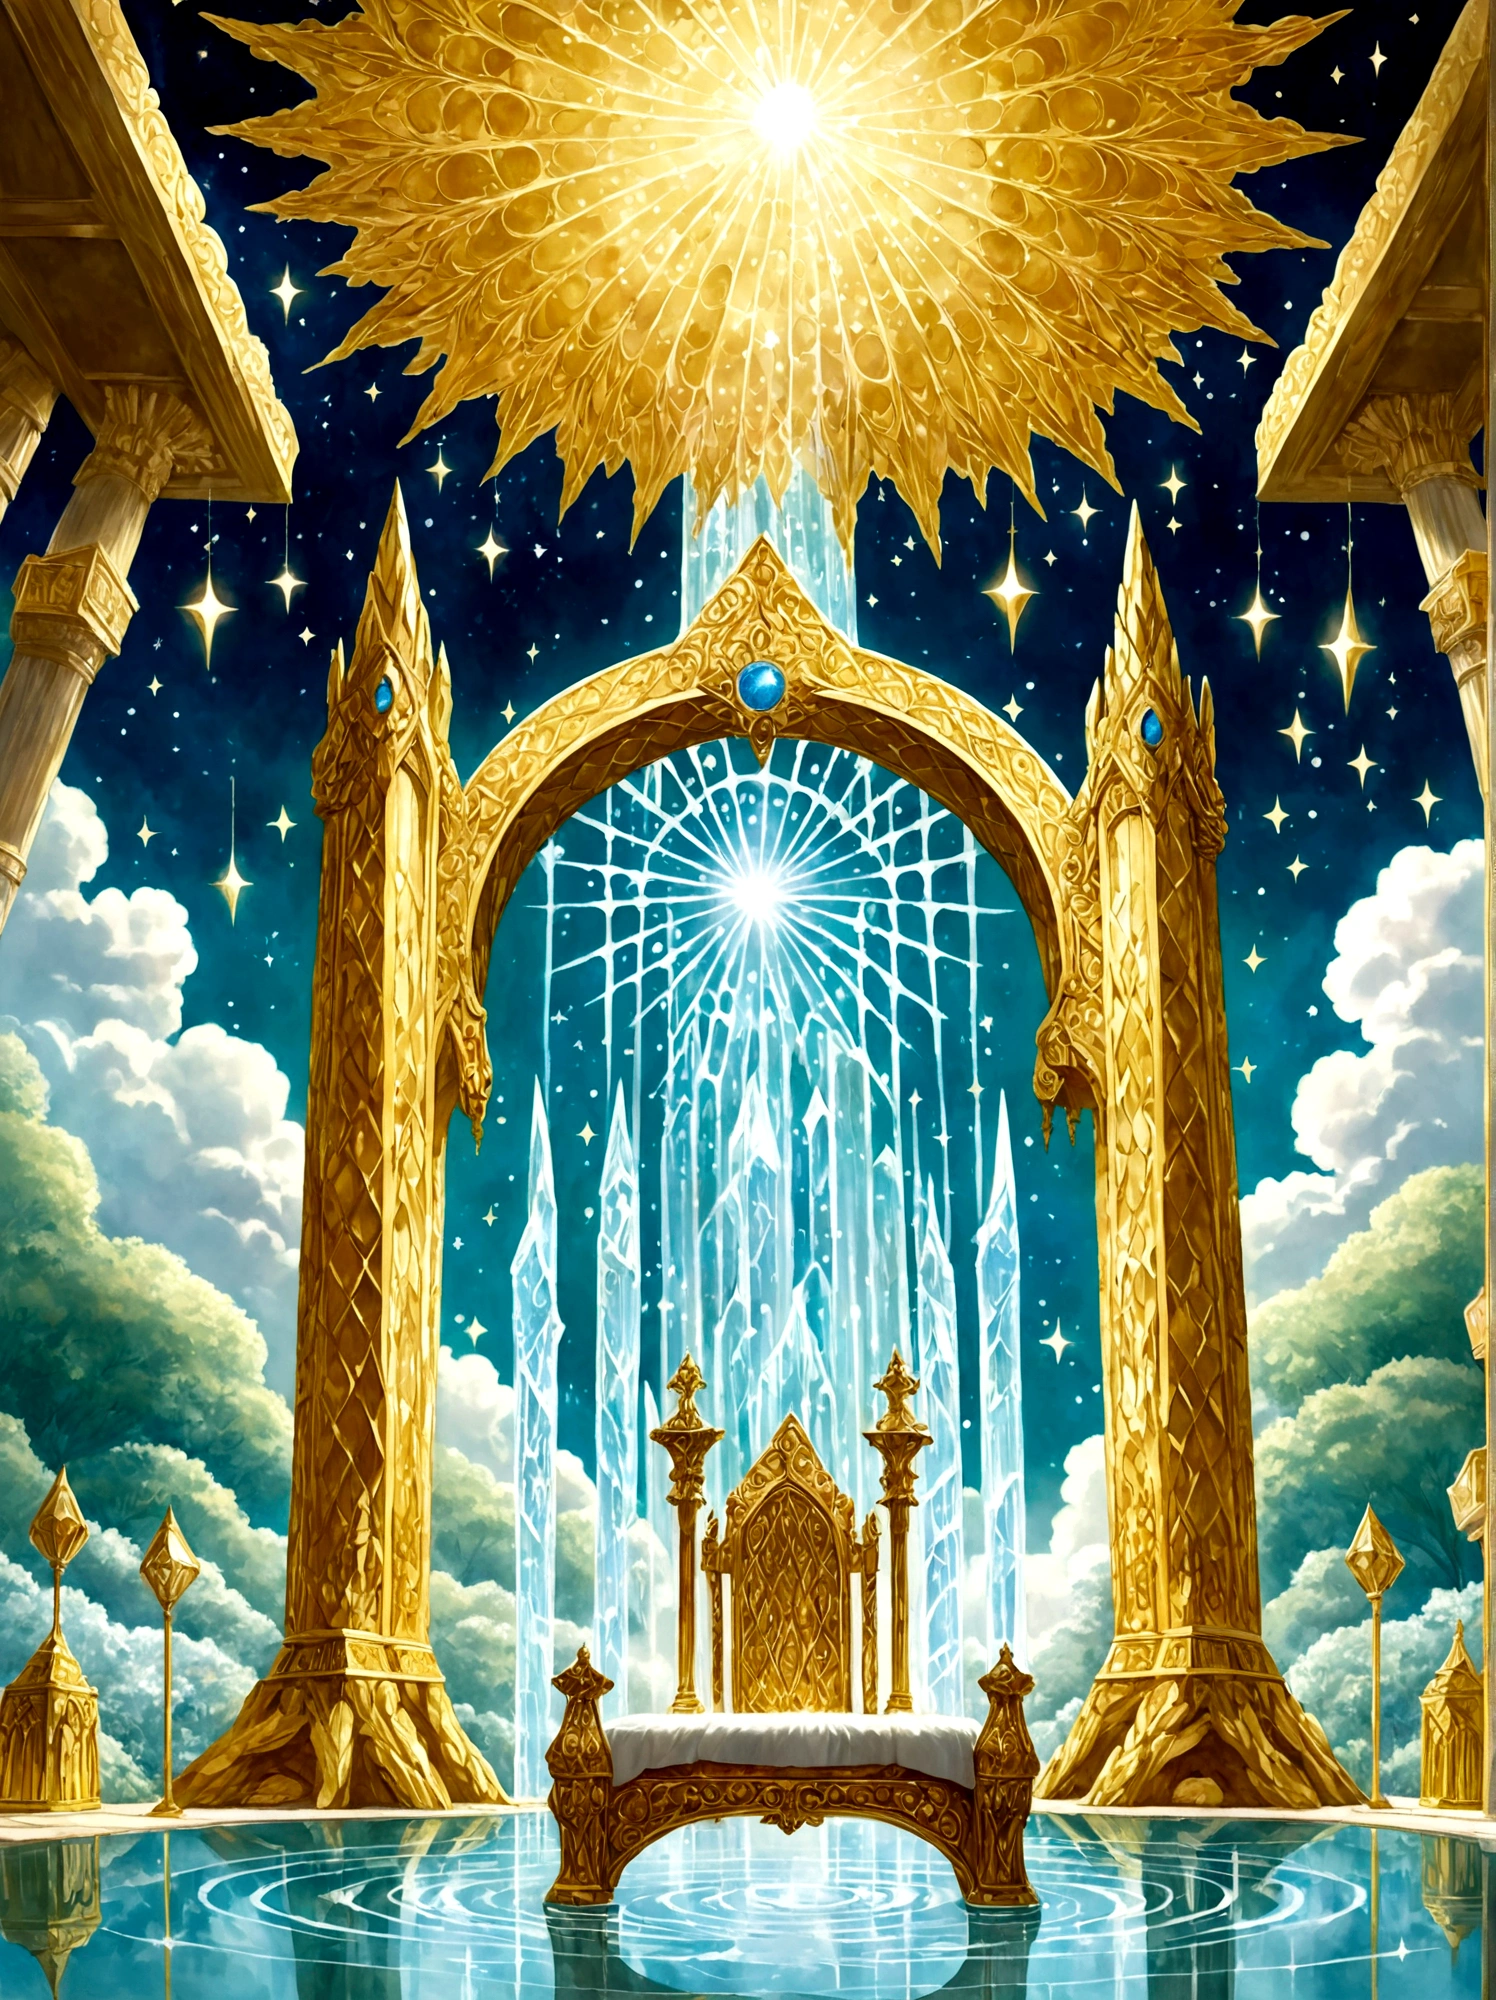 Представьте себе величественный тронный зал за пределами человеческого царства., как описано в первой книге Еноха, Комната наполнена величием, во главе которого стоит огромный трон, сделанный из чистого, мерцающий кристалл. Рядом с троном, вырываются четыре ручья воды, символизирующий четыре райские реки, Комната ярко освещена сияющим светом, и пол словно сияет, прозрачный кристалл, В комнату ведут красиво резные жемчужные ворота., в то время как мириады звезд мерцают высоко над сводами, небесный потолок, Мягкий, эфирный туман пронизывает воздух, дальнейшее усиление мистической атмосферы